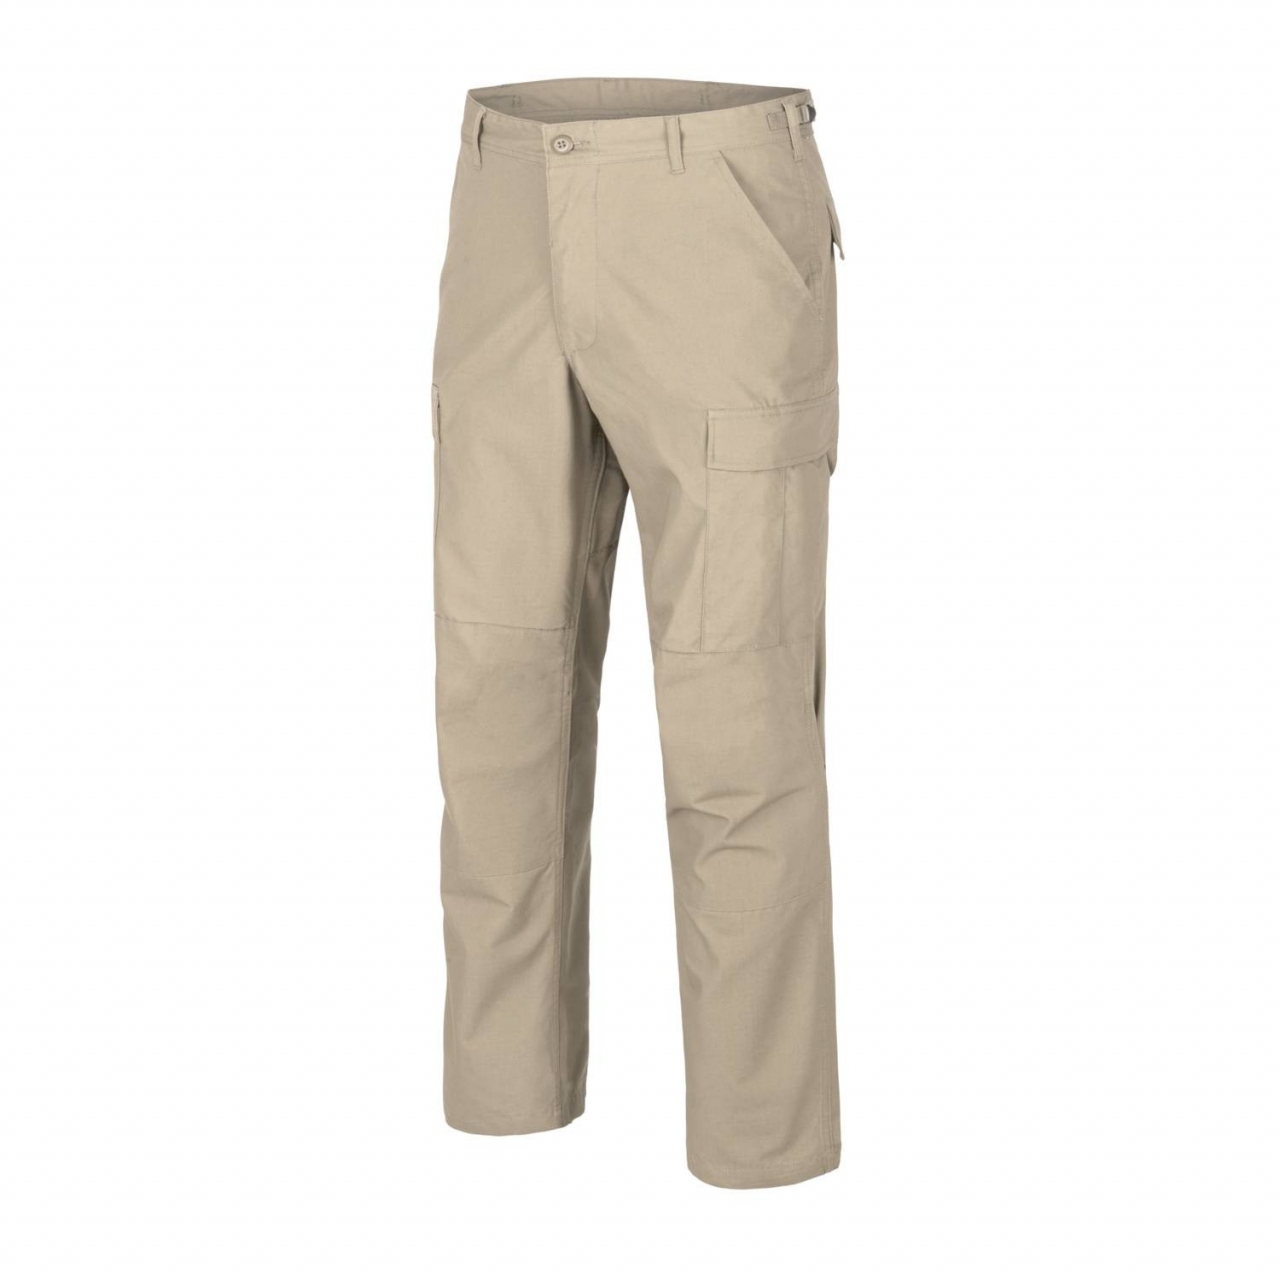 Kalhoty Helikon BDU Pants Ripstop - béžové, S